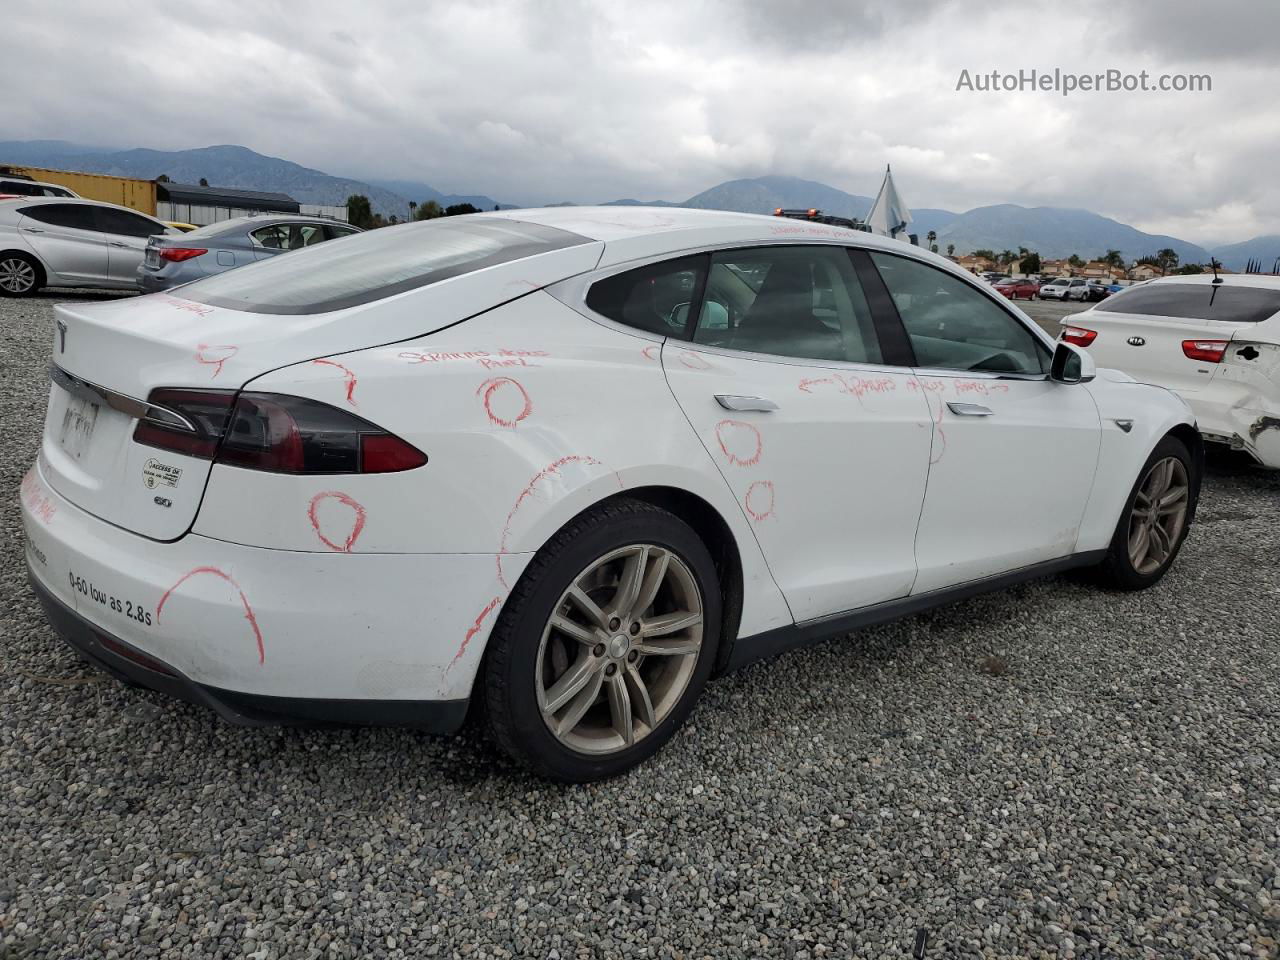 2014 Tesla Model S  White vin: 5YJSA1S18EFP36615